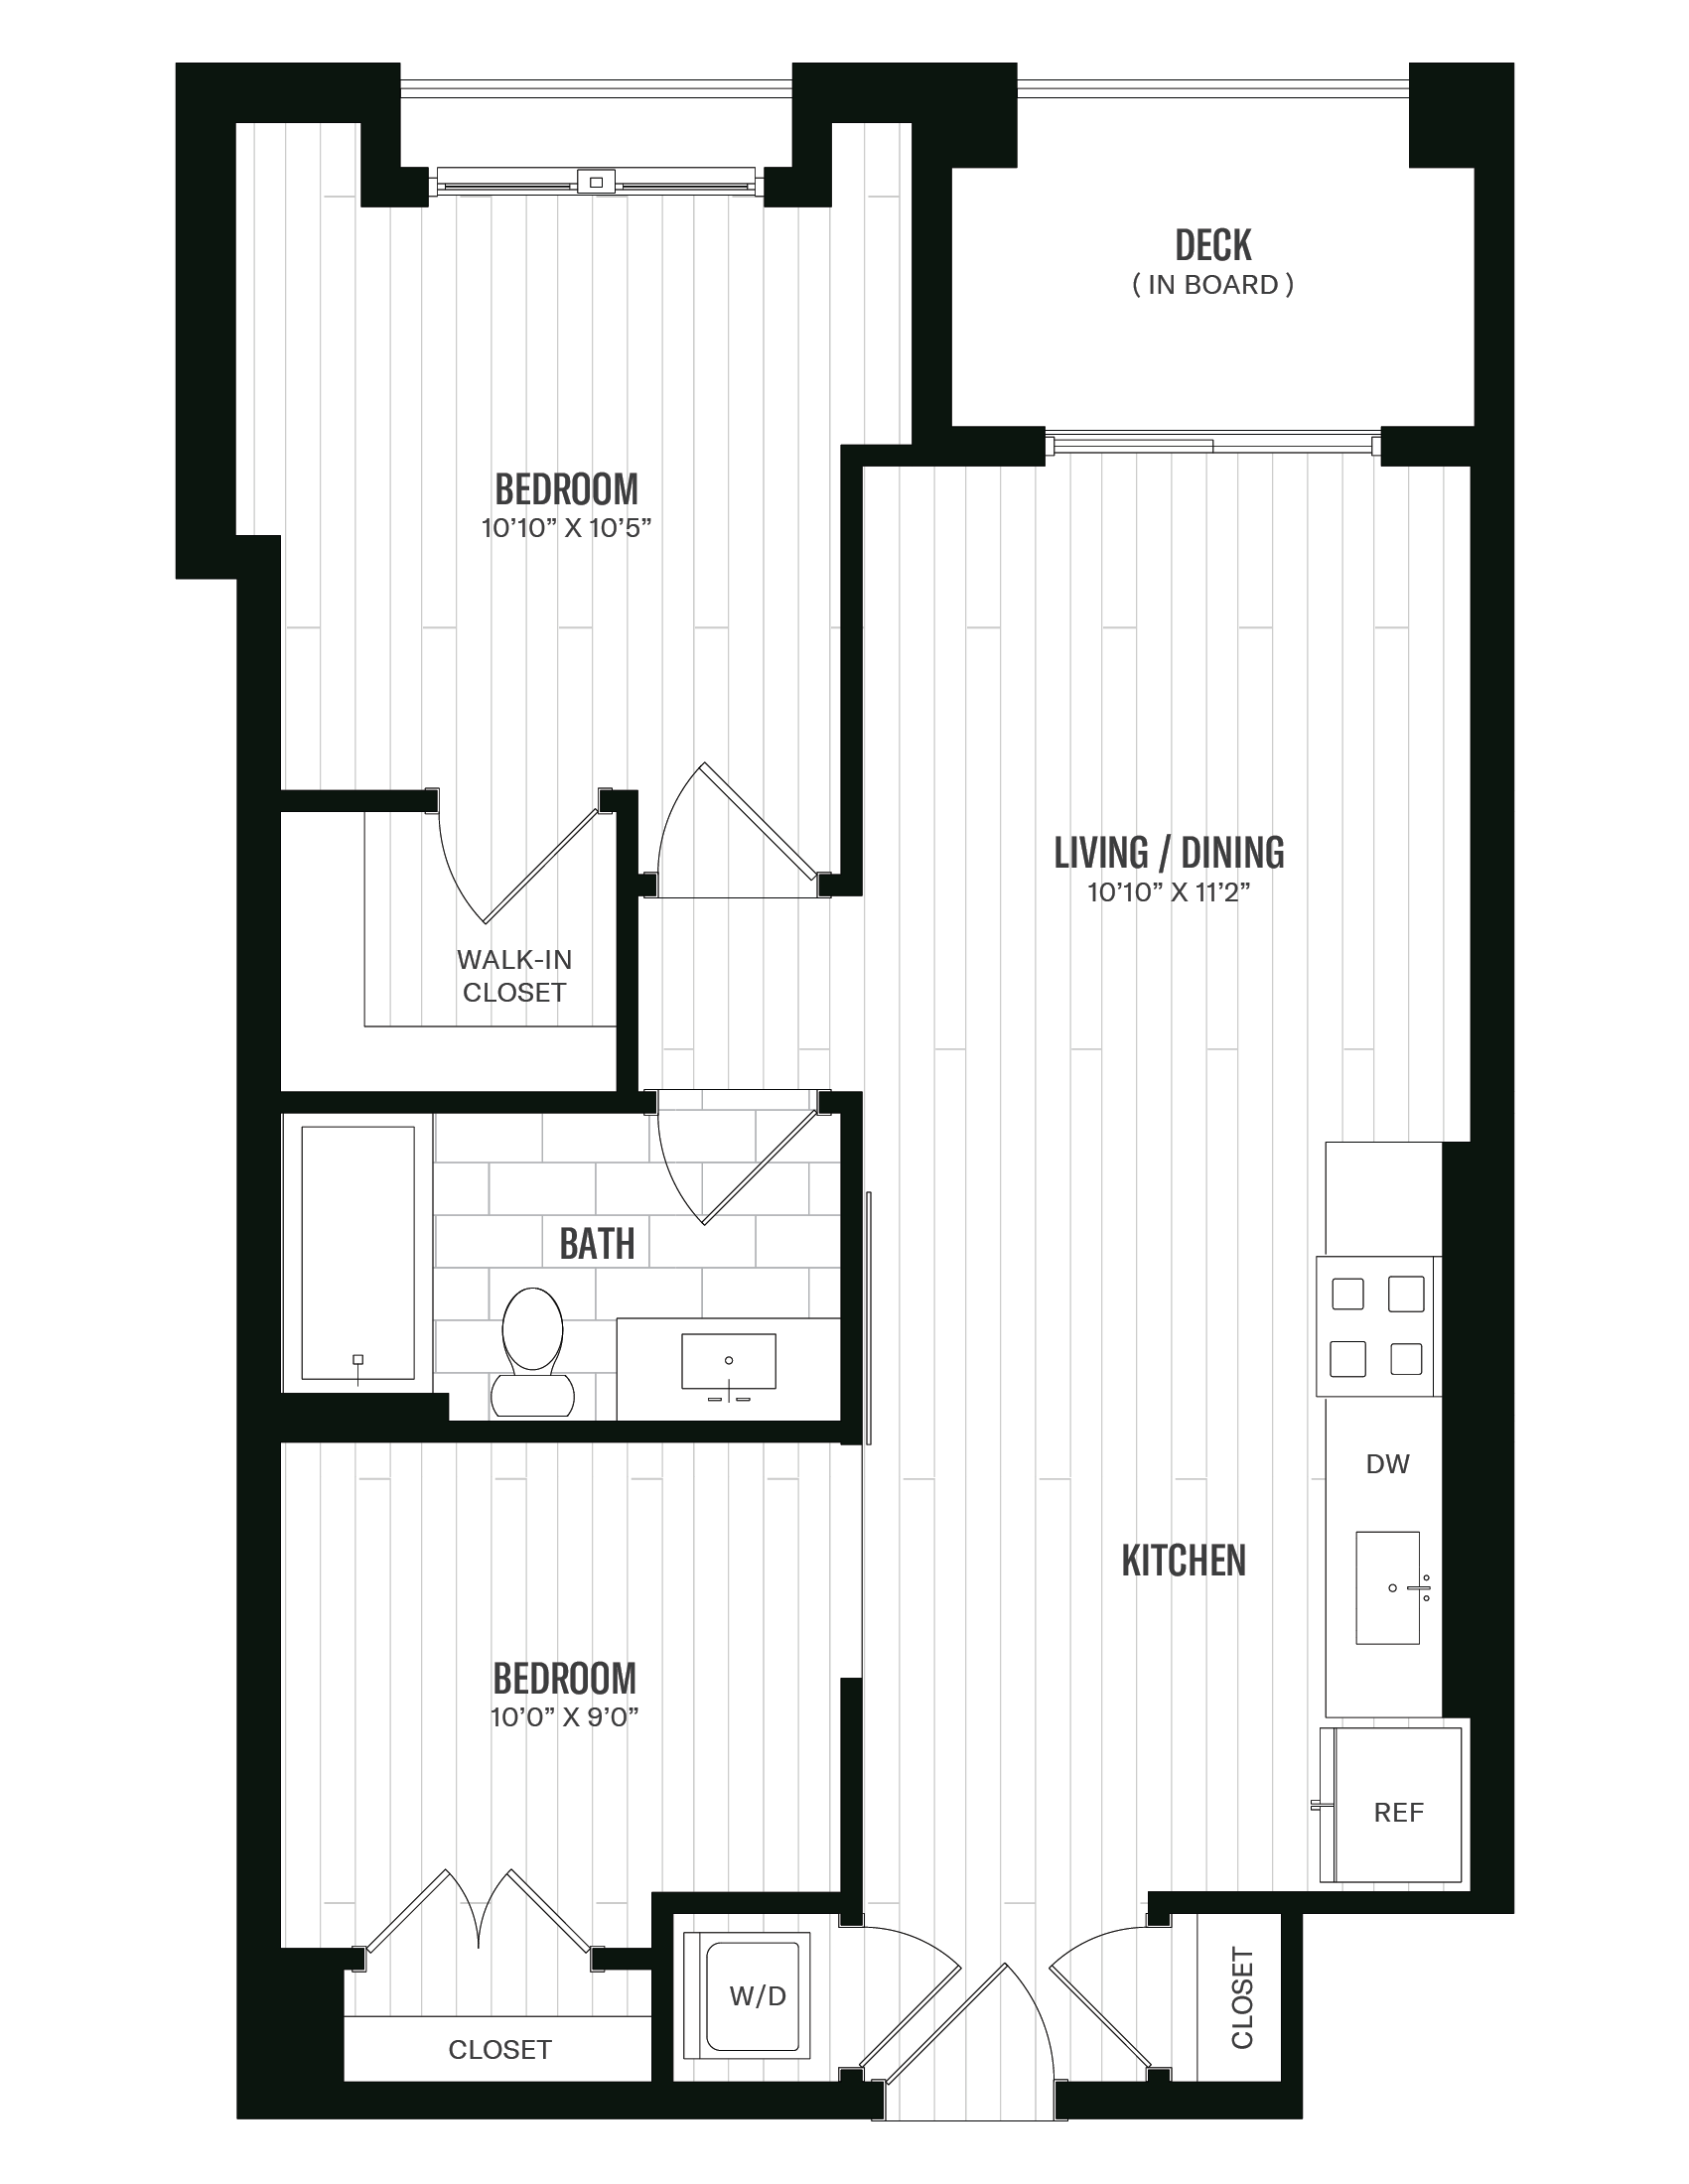 Floorplan image of unit 544